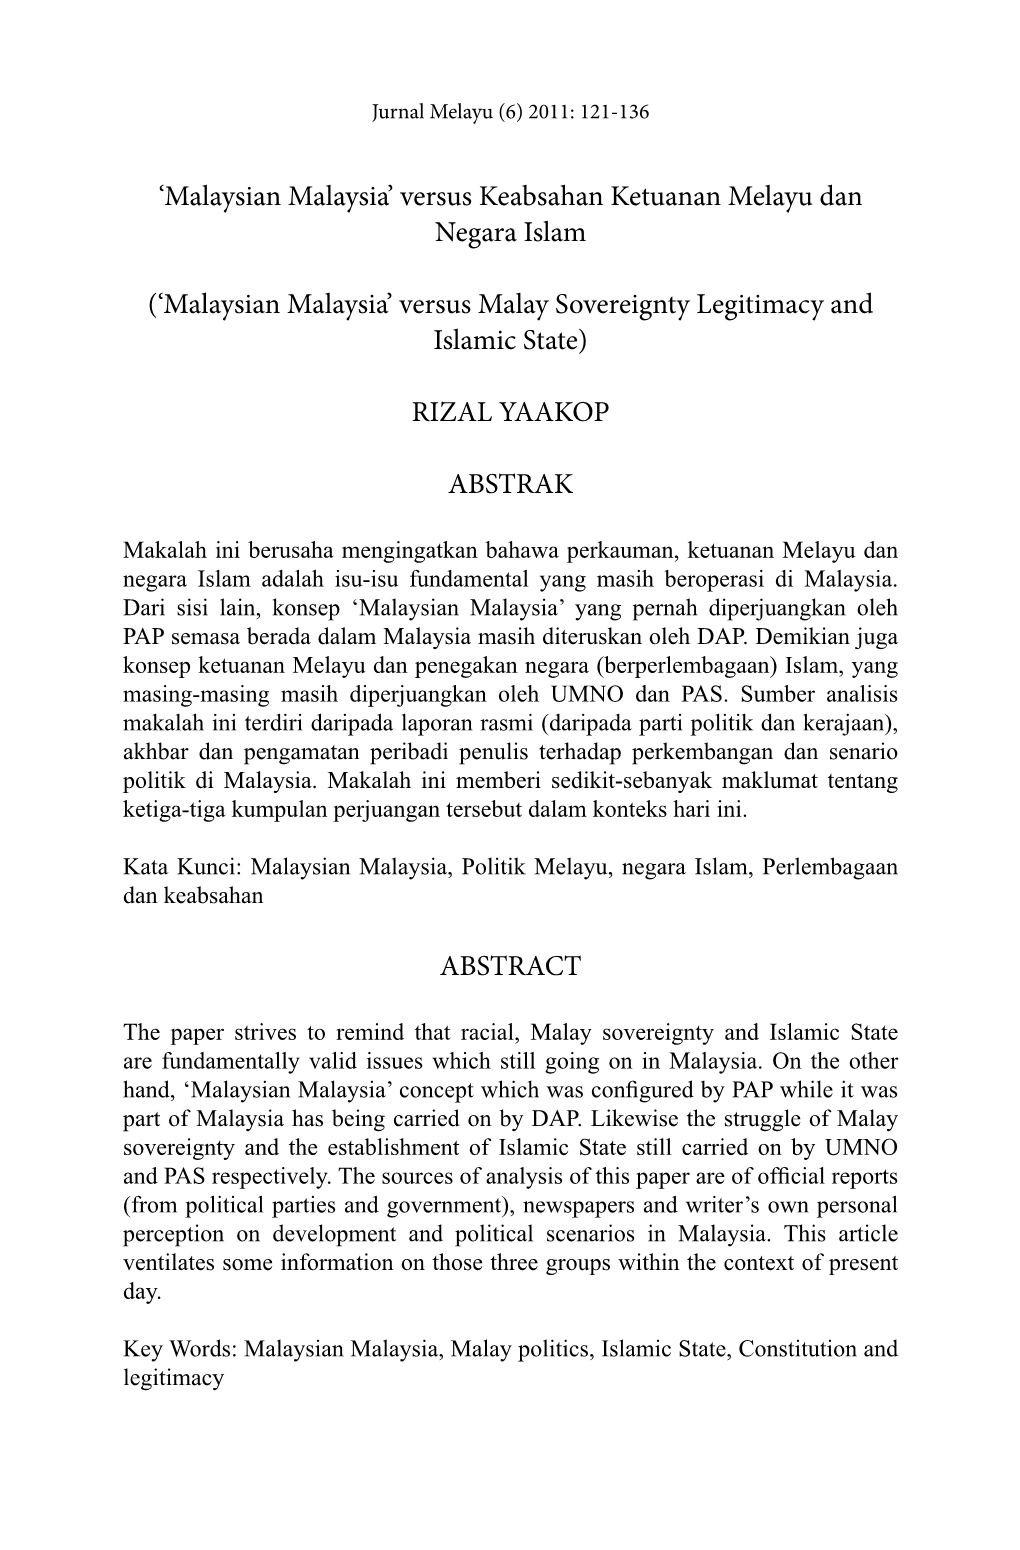 Malaysian Malaysia’ Versus Keabsahan Ketuanan Melayu Dan Negara Islam